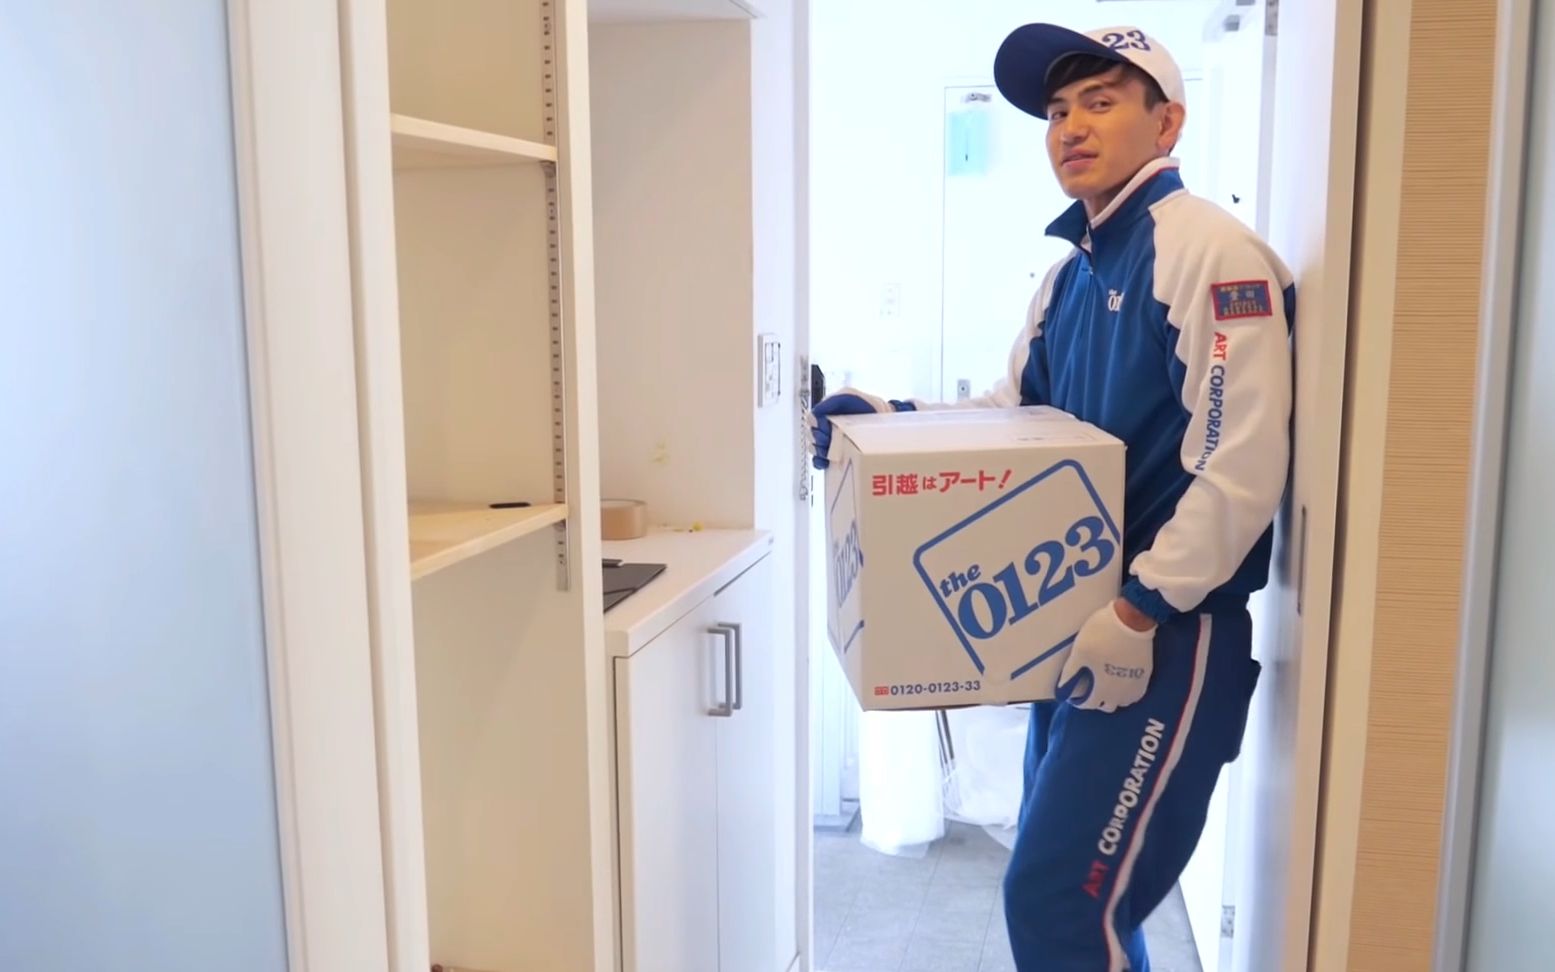 日本已经将某些服务业做到了极致：小两口请一家日本的搬家公司搬家全过程